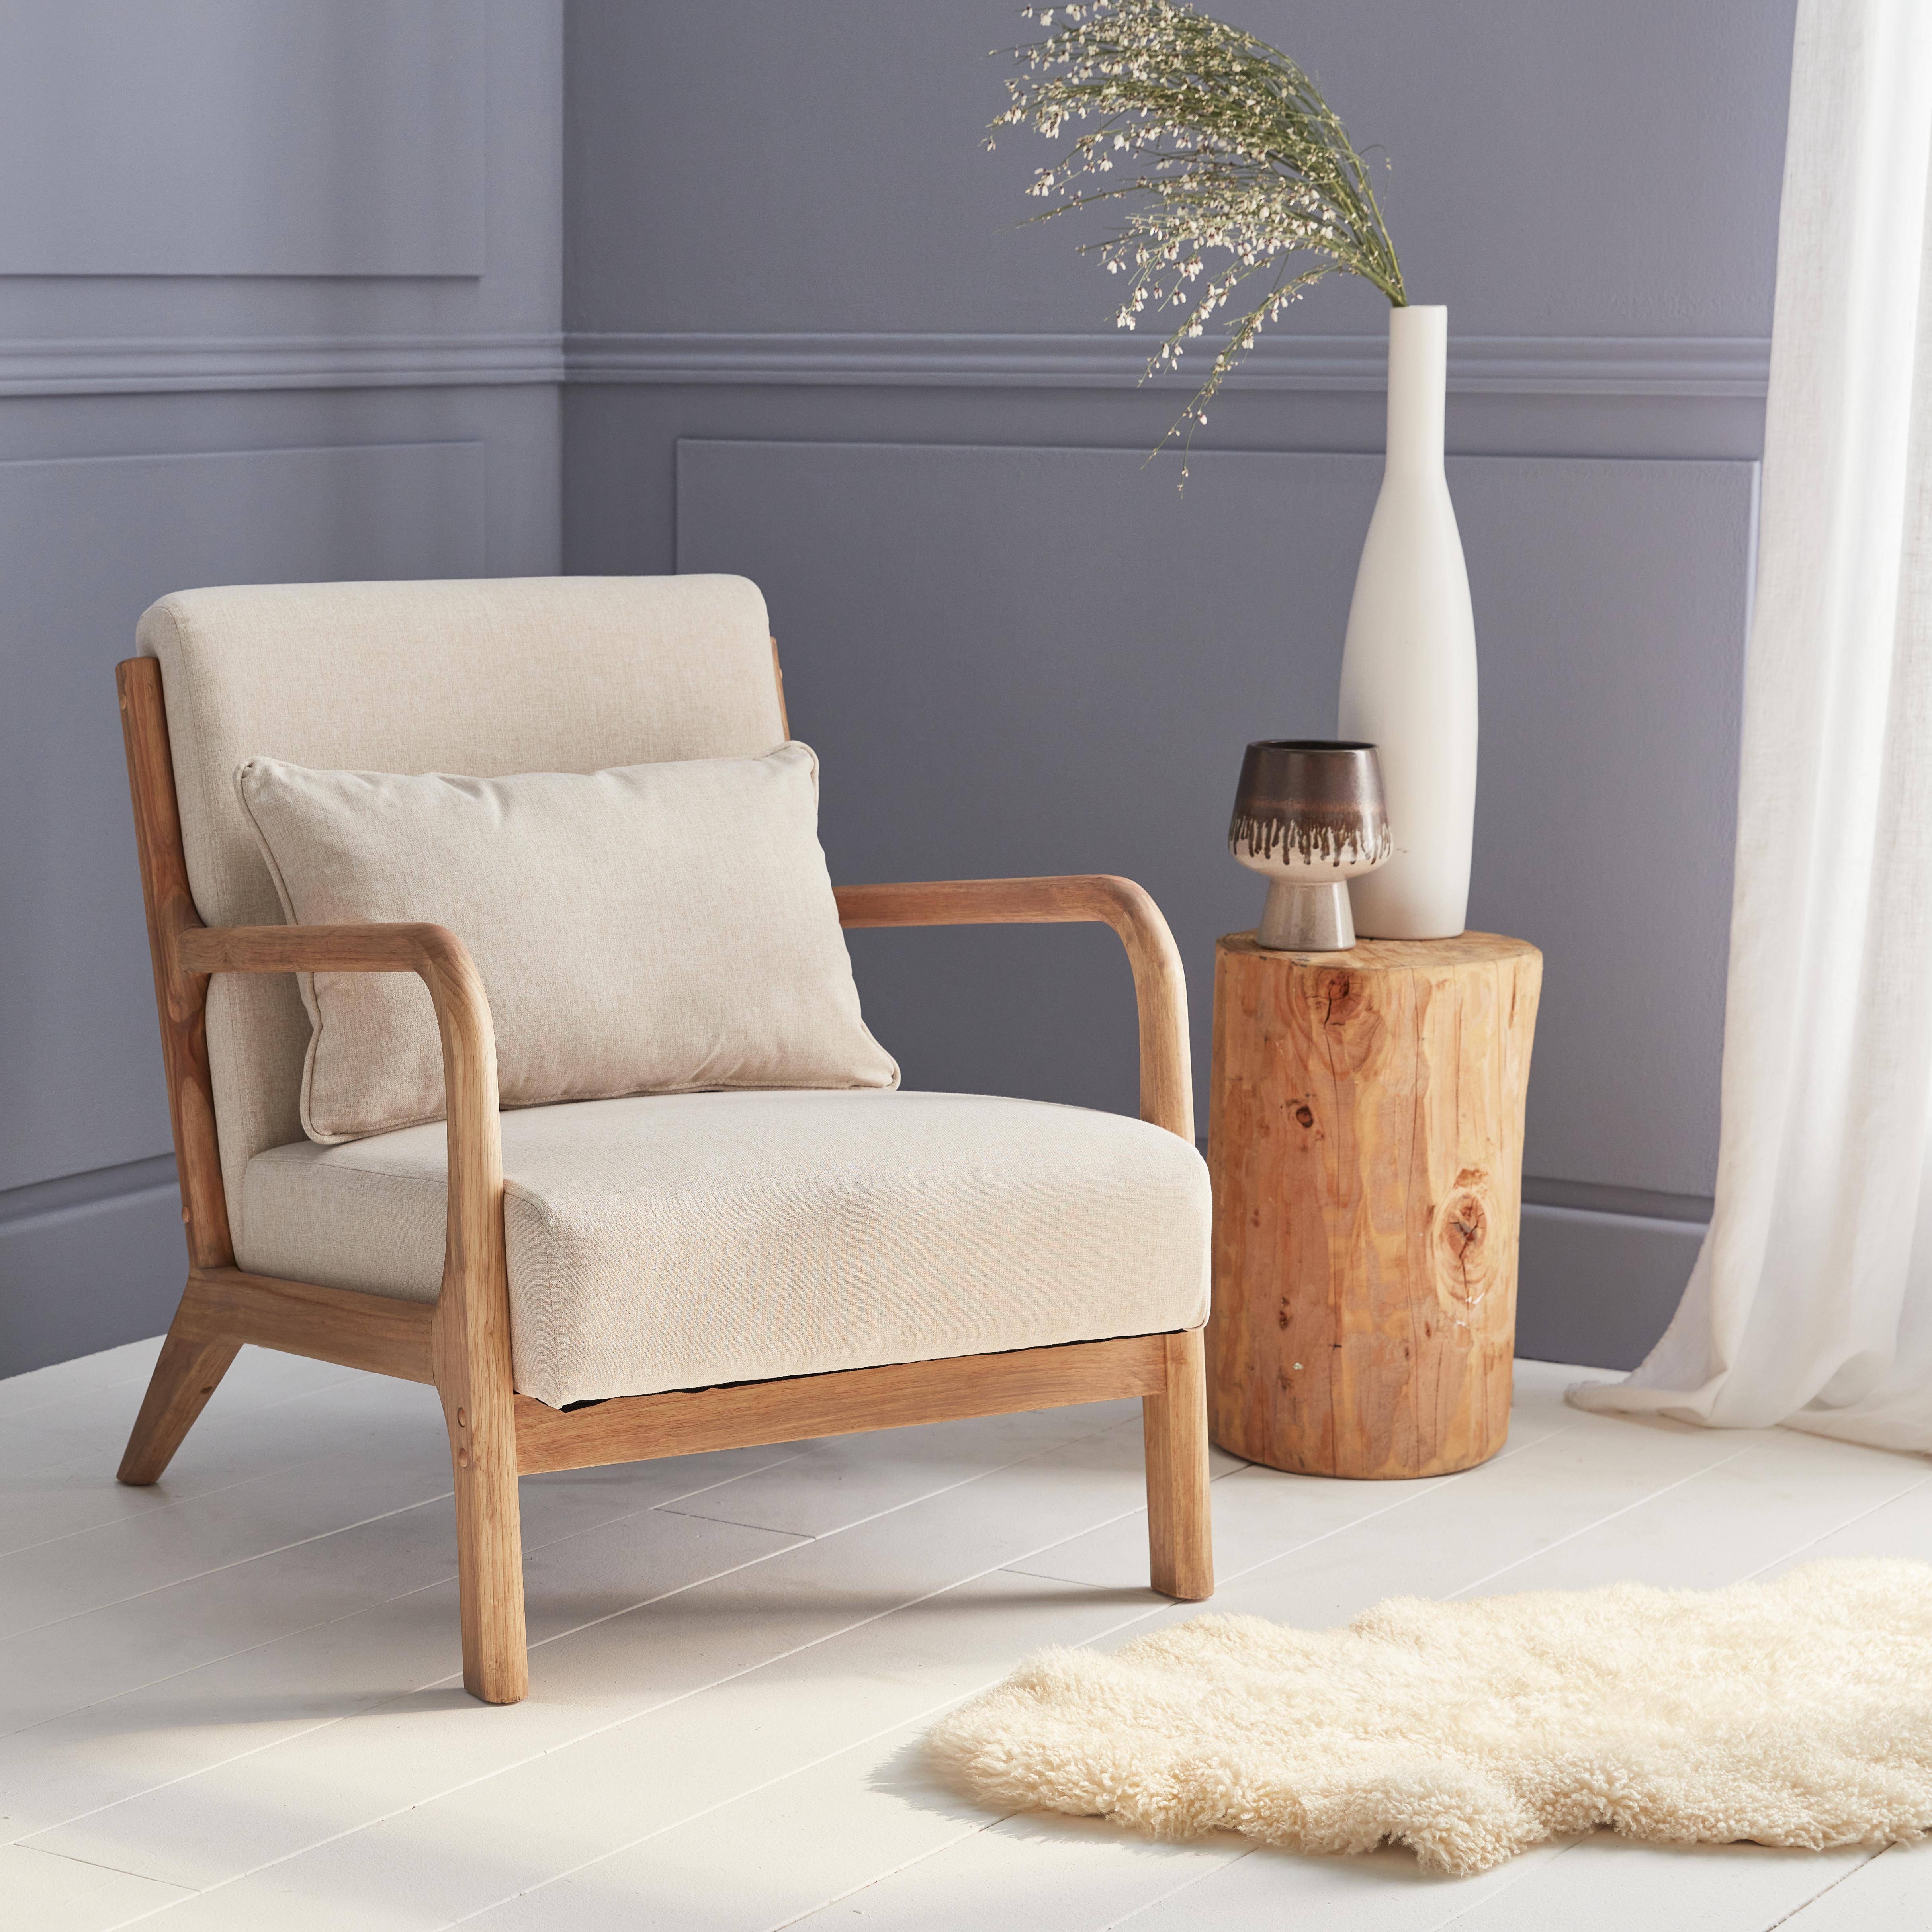 Poltrona de design em madeira e tecido, 1 assento reto fixo, pernas em bússola escandinavas, estrutura em madeira maciça, assento bege confortável,sweeek,Photo1